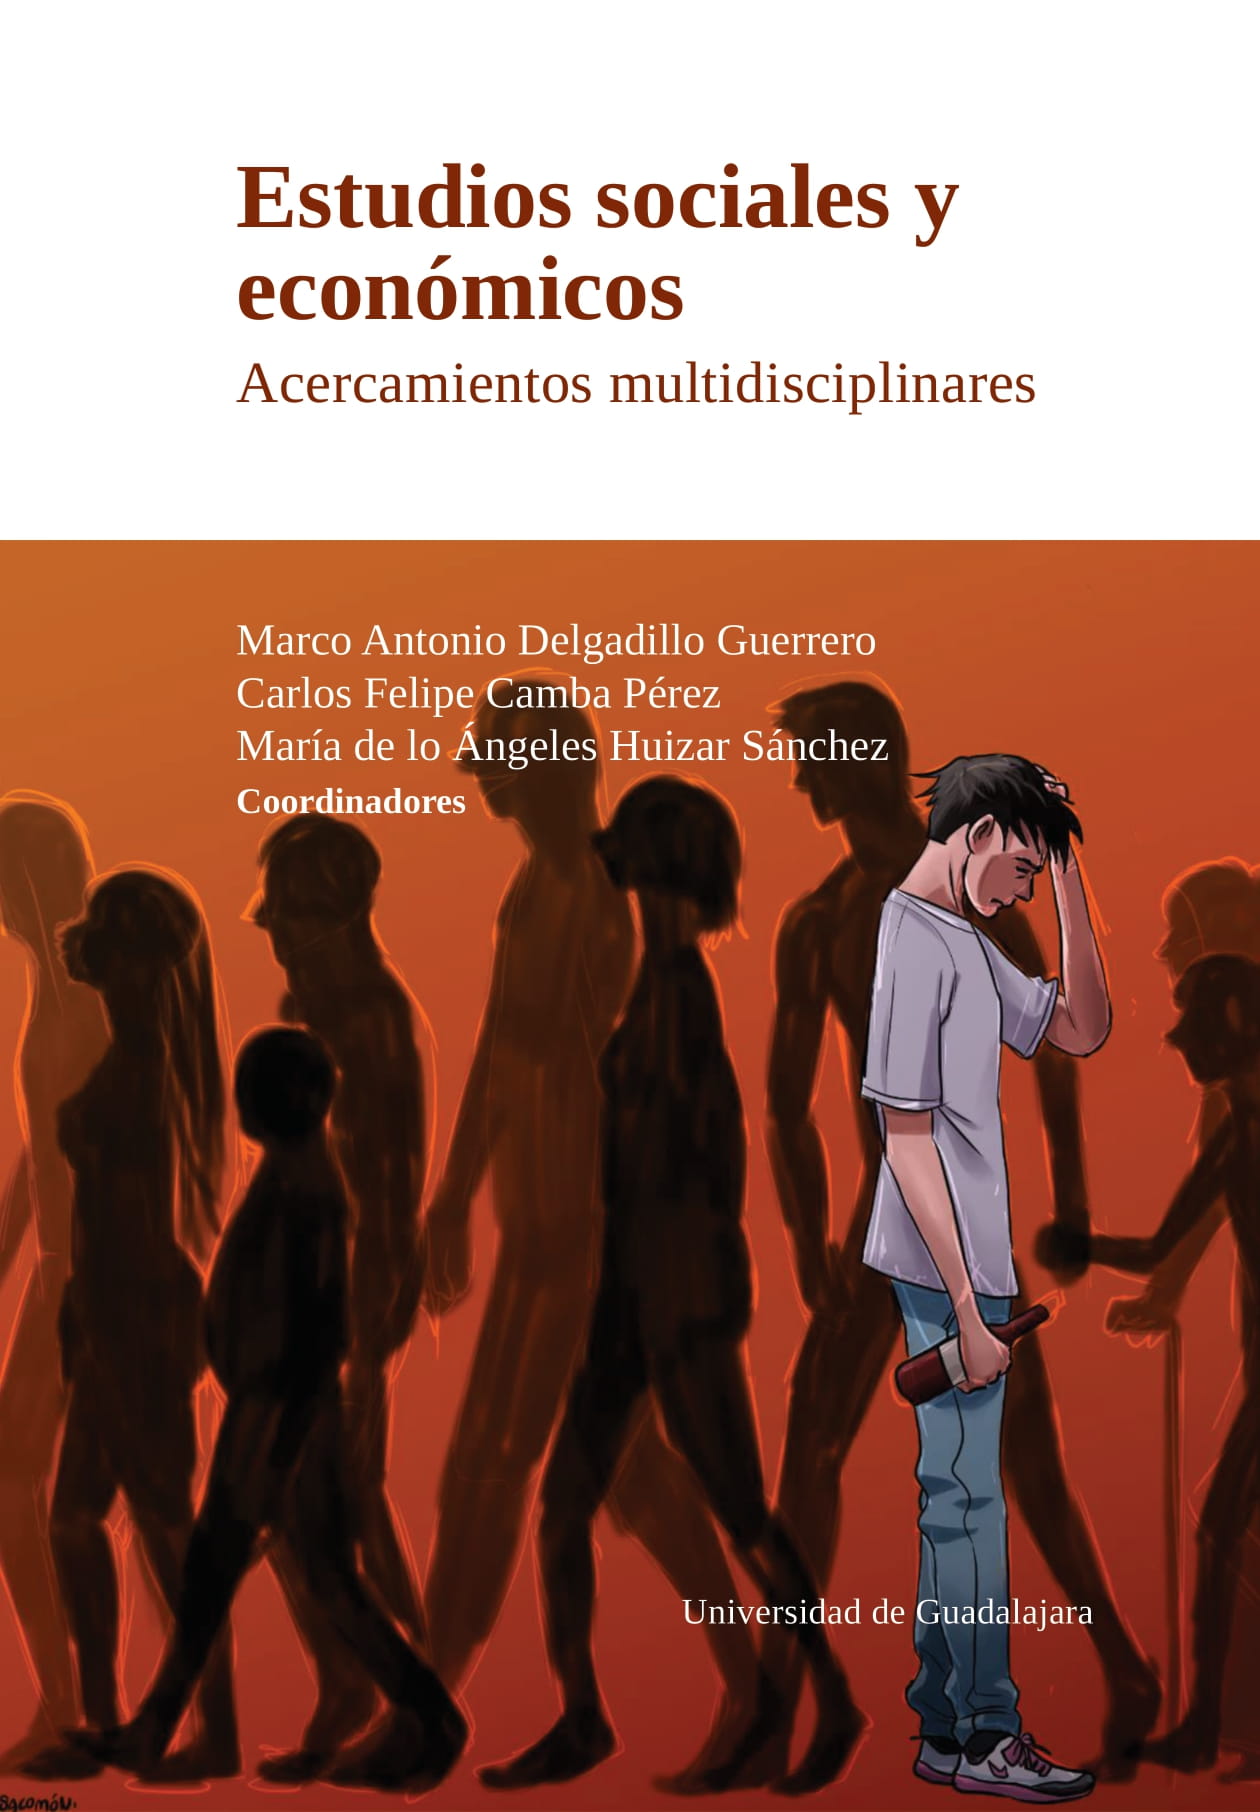 Estudios sociales y económicos. Acercamientos multidisciplinares<br />
        